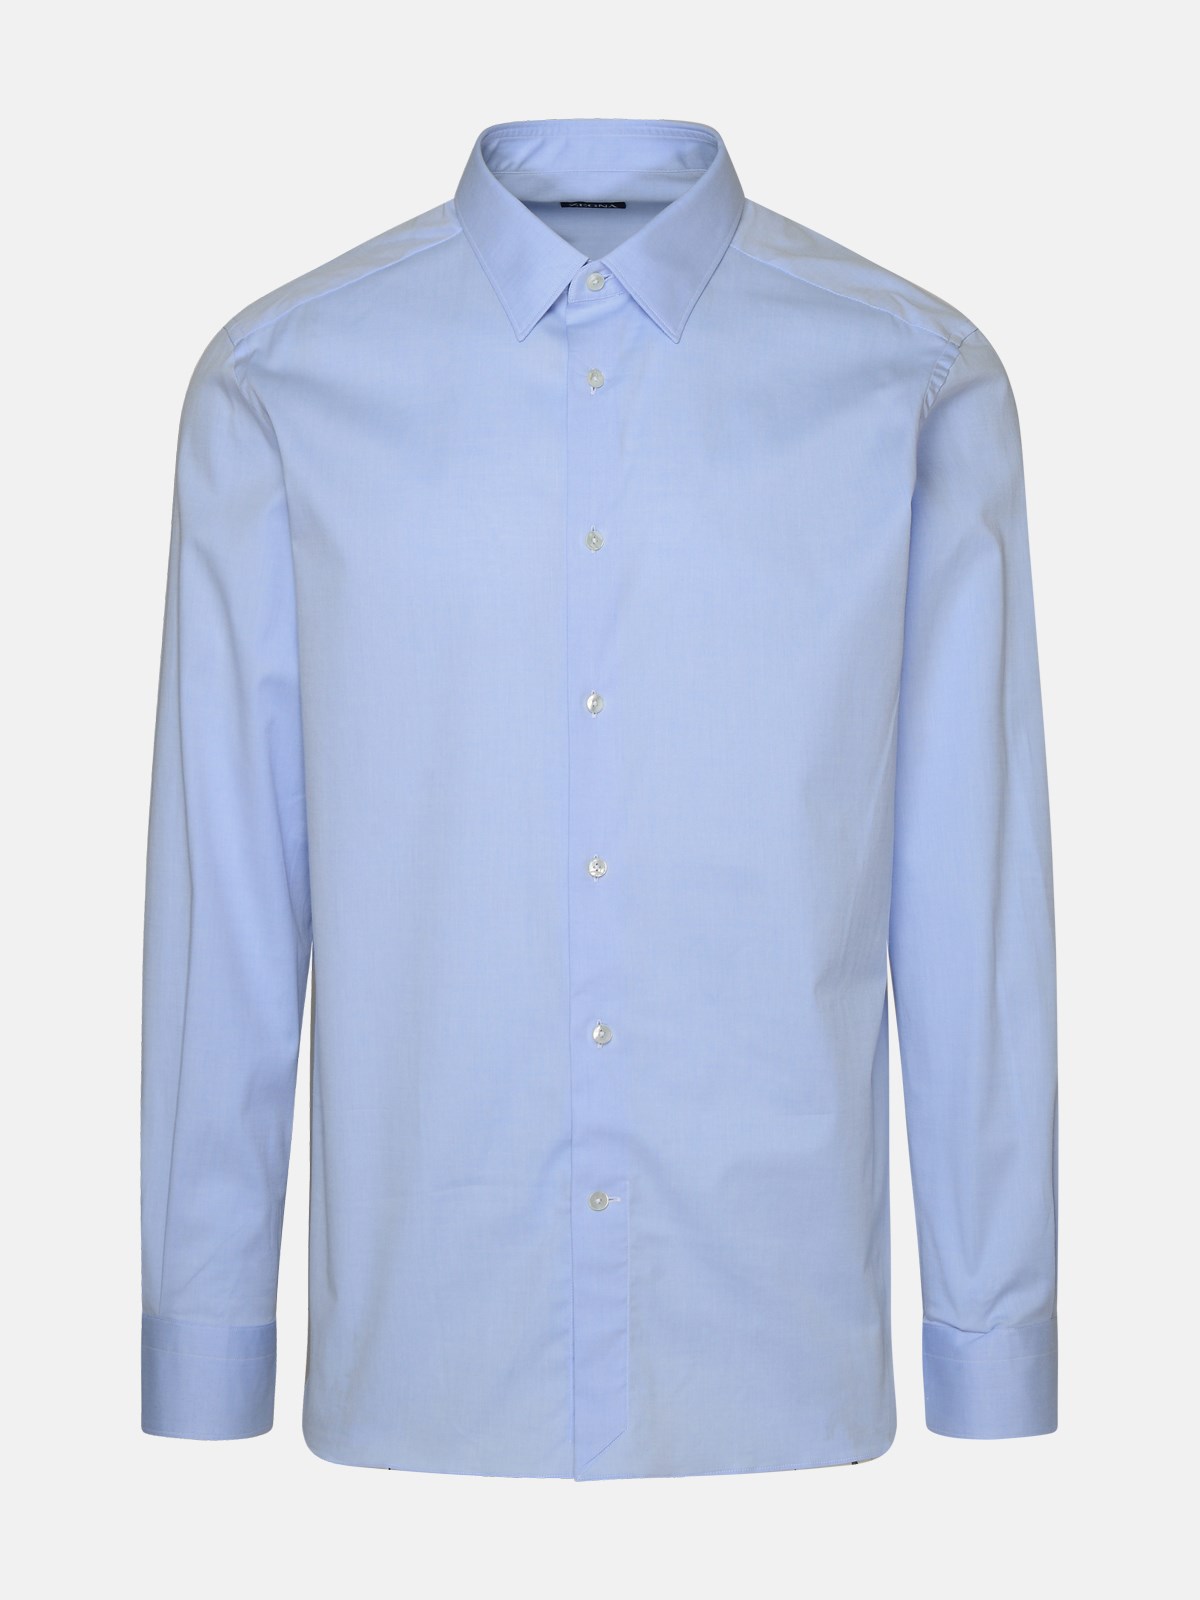 Zegna Light Blue Strech Cotton Shirt